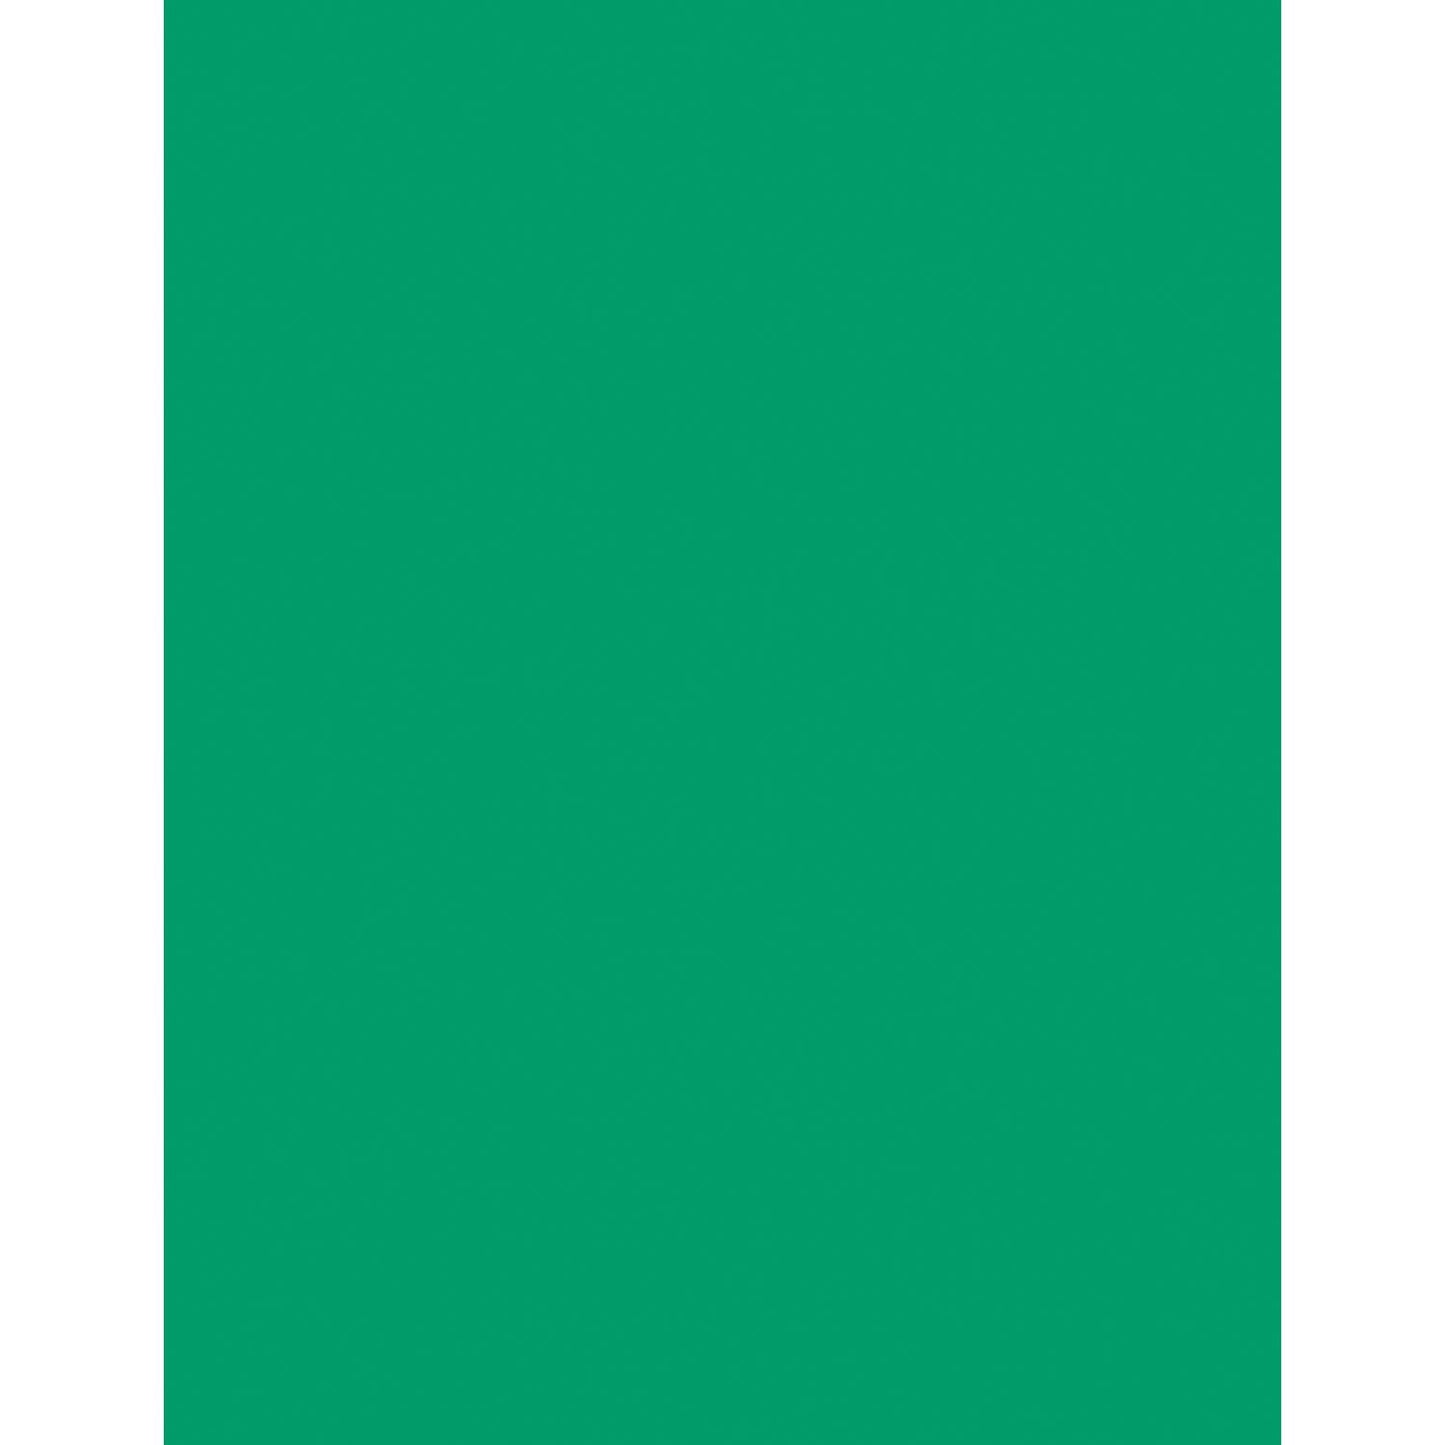 Card Stock, Emerald Green, 8-1/2" x 11", 100 Sheets - Loomini